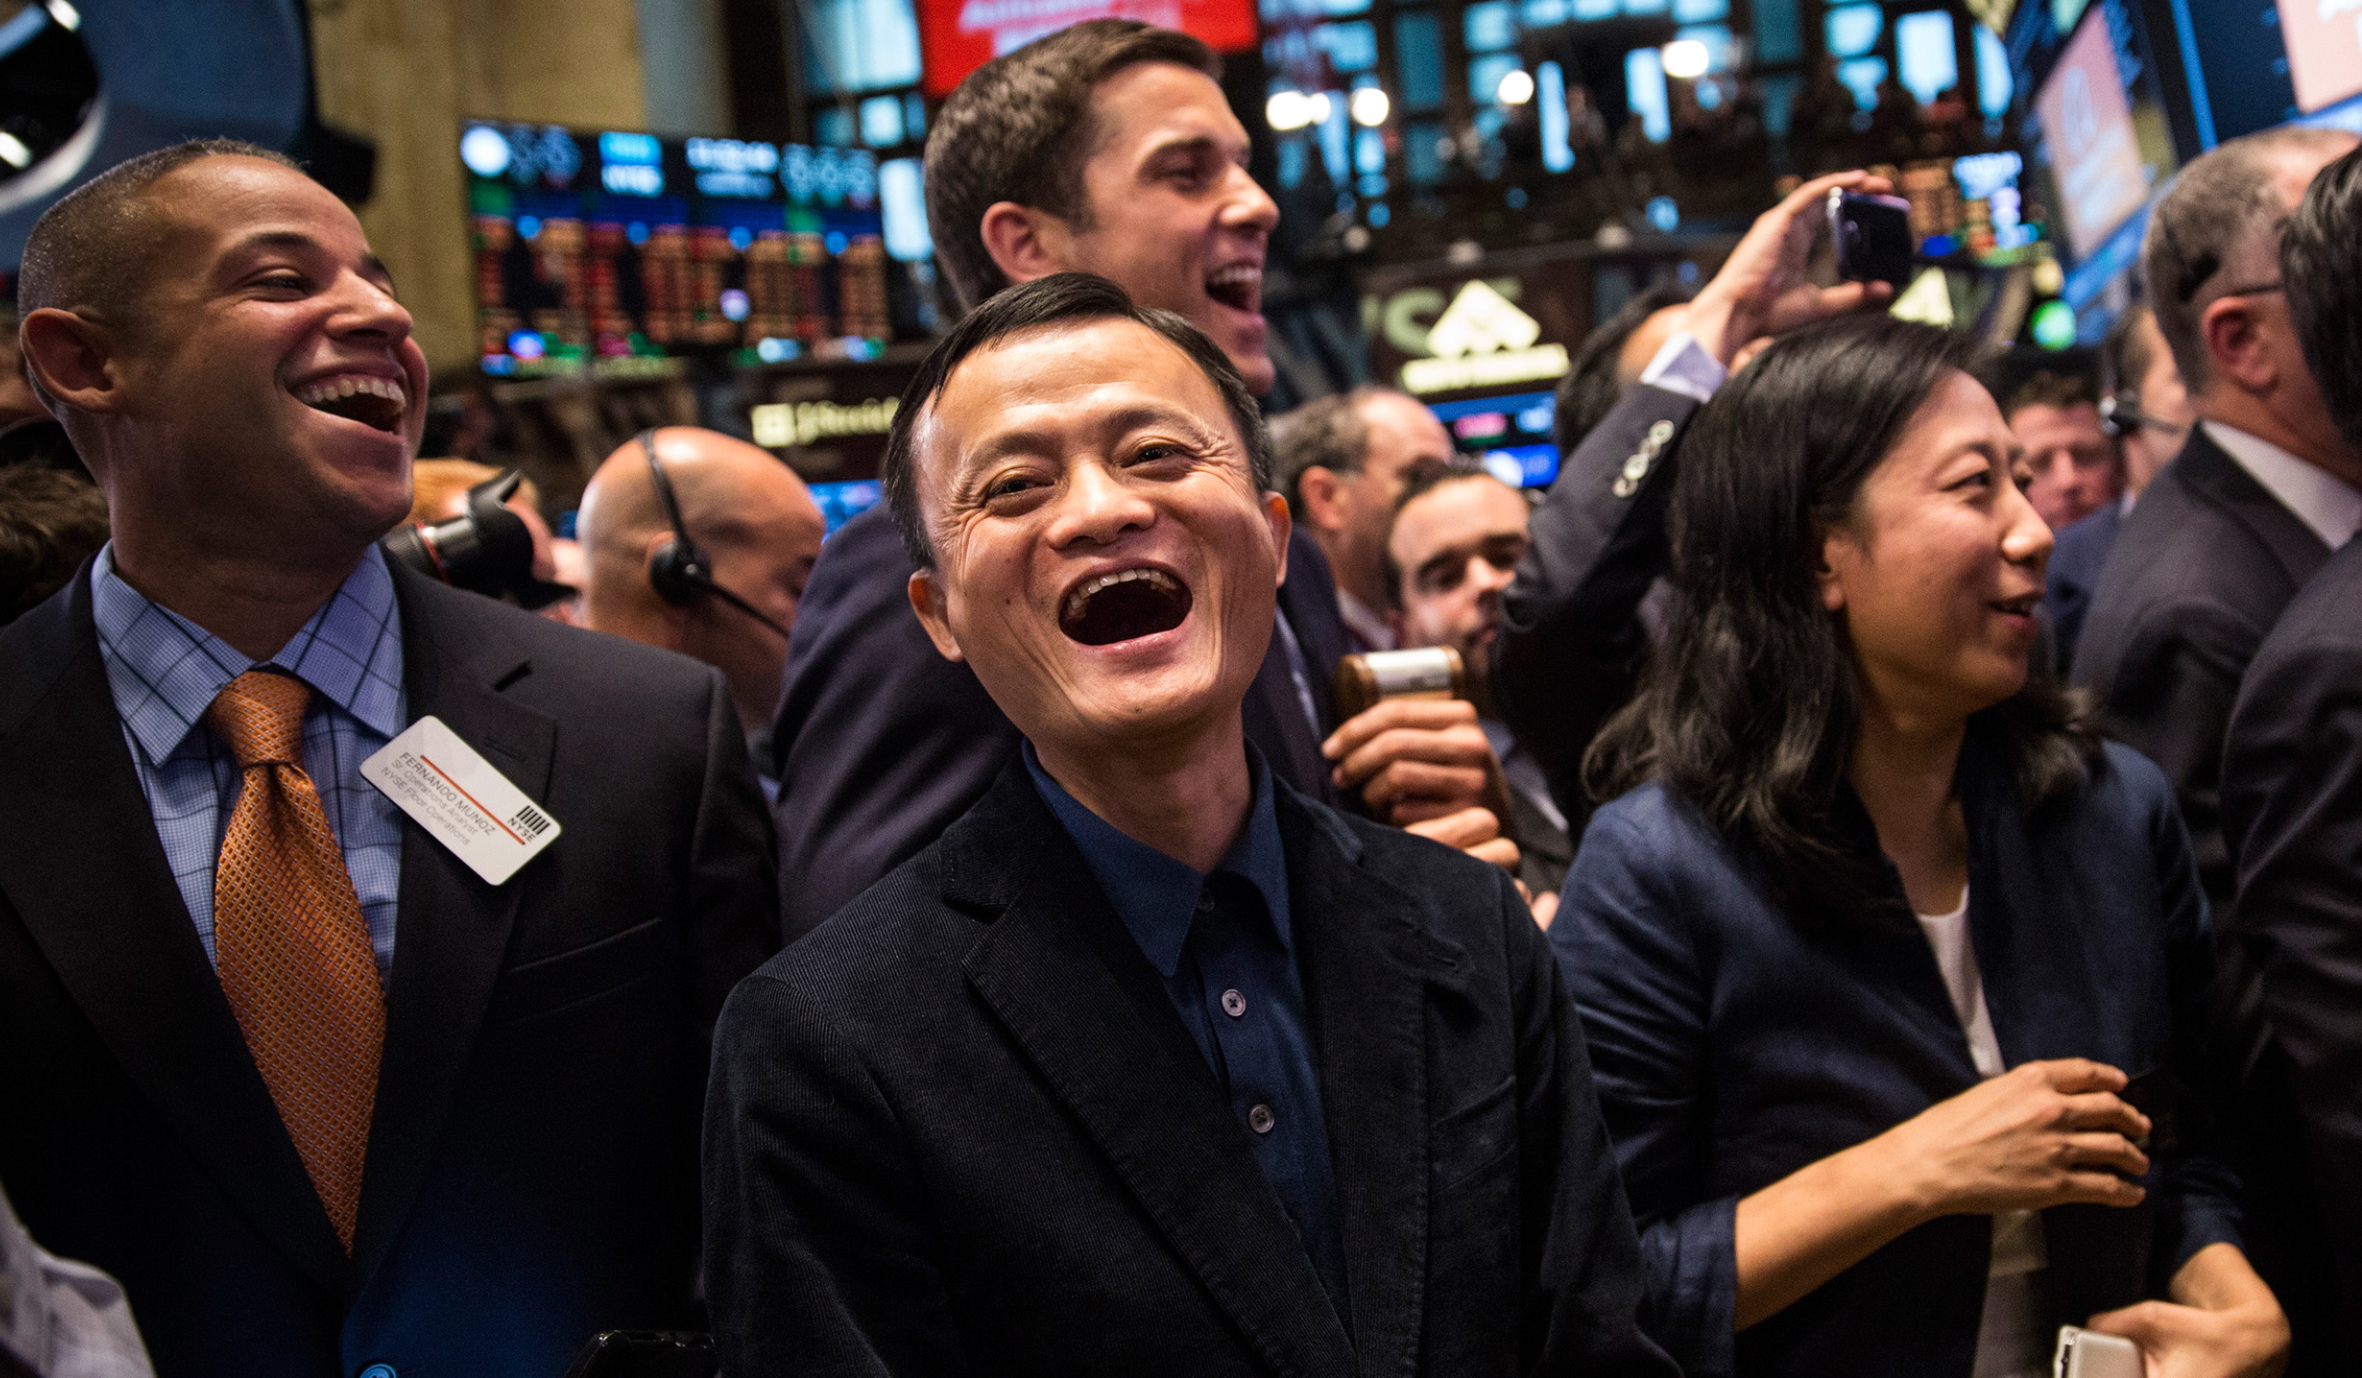 Alibaba lên sàn Hồng Kông: Huy động 11 tỷ USD, cổ phiếu tăng gần 8%